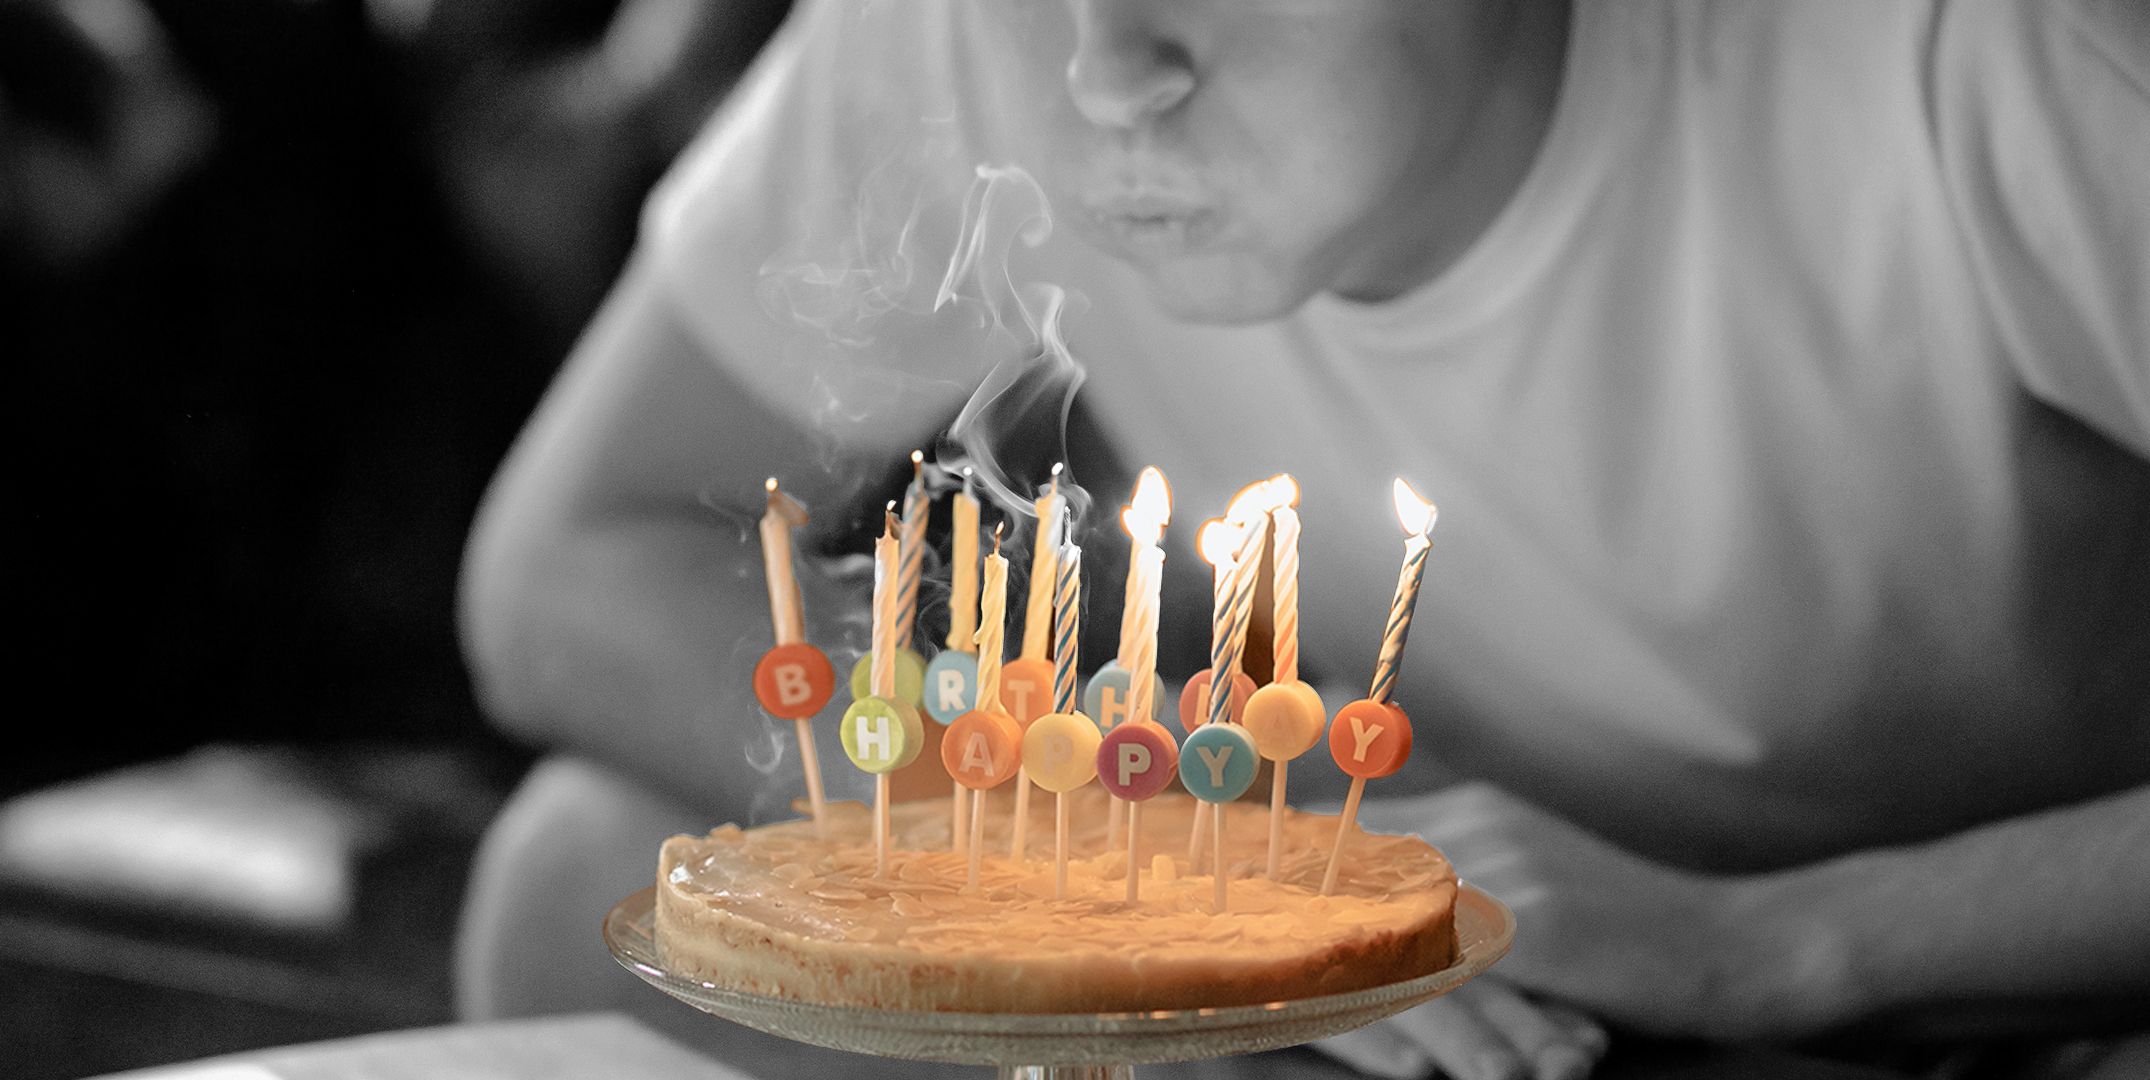 90 Birthday Wishes for Boyfriend 2023 - Instagram Captions for Boyfriend Birthday